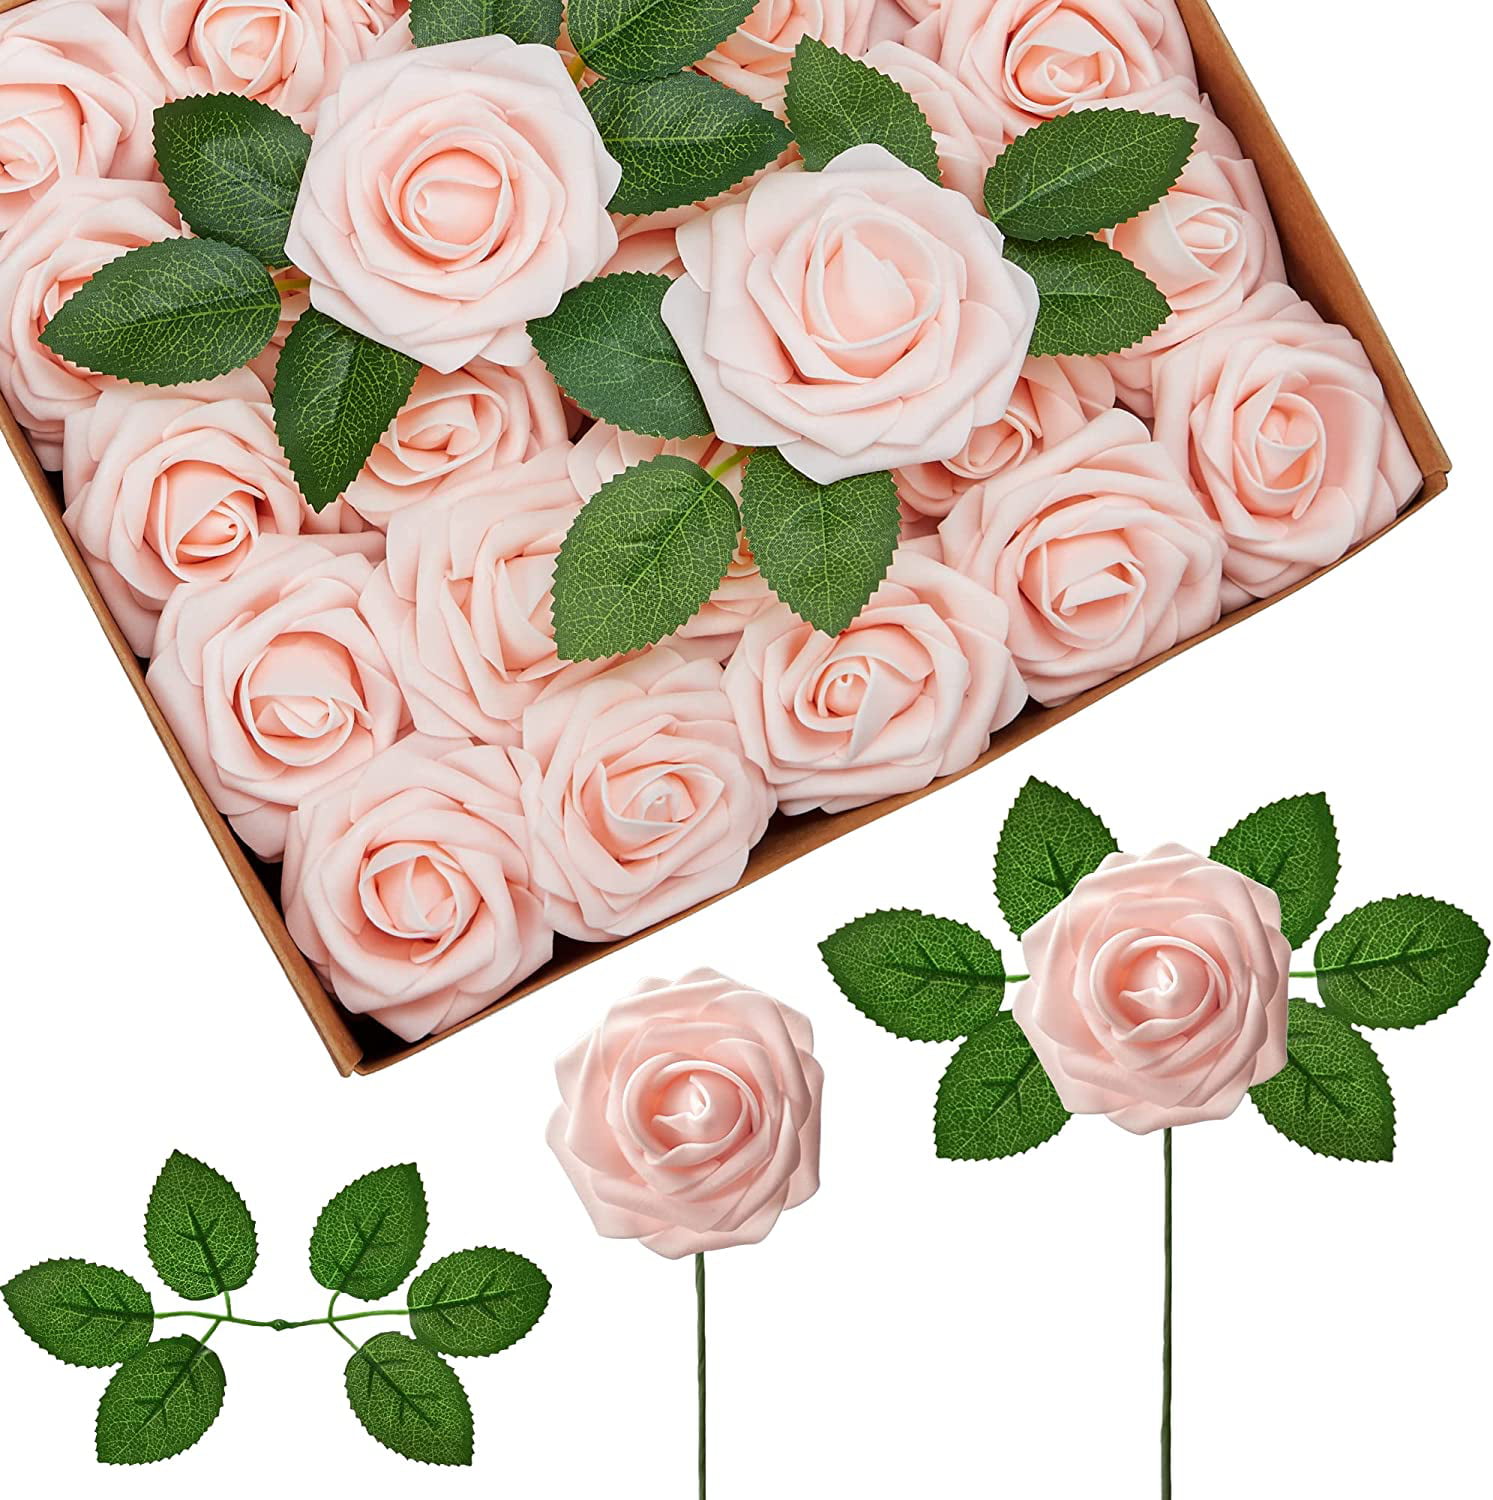 4 PCS Rose Artificial Silk Flowers Bridal Wedding Party Bouquet Home Decor 